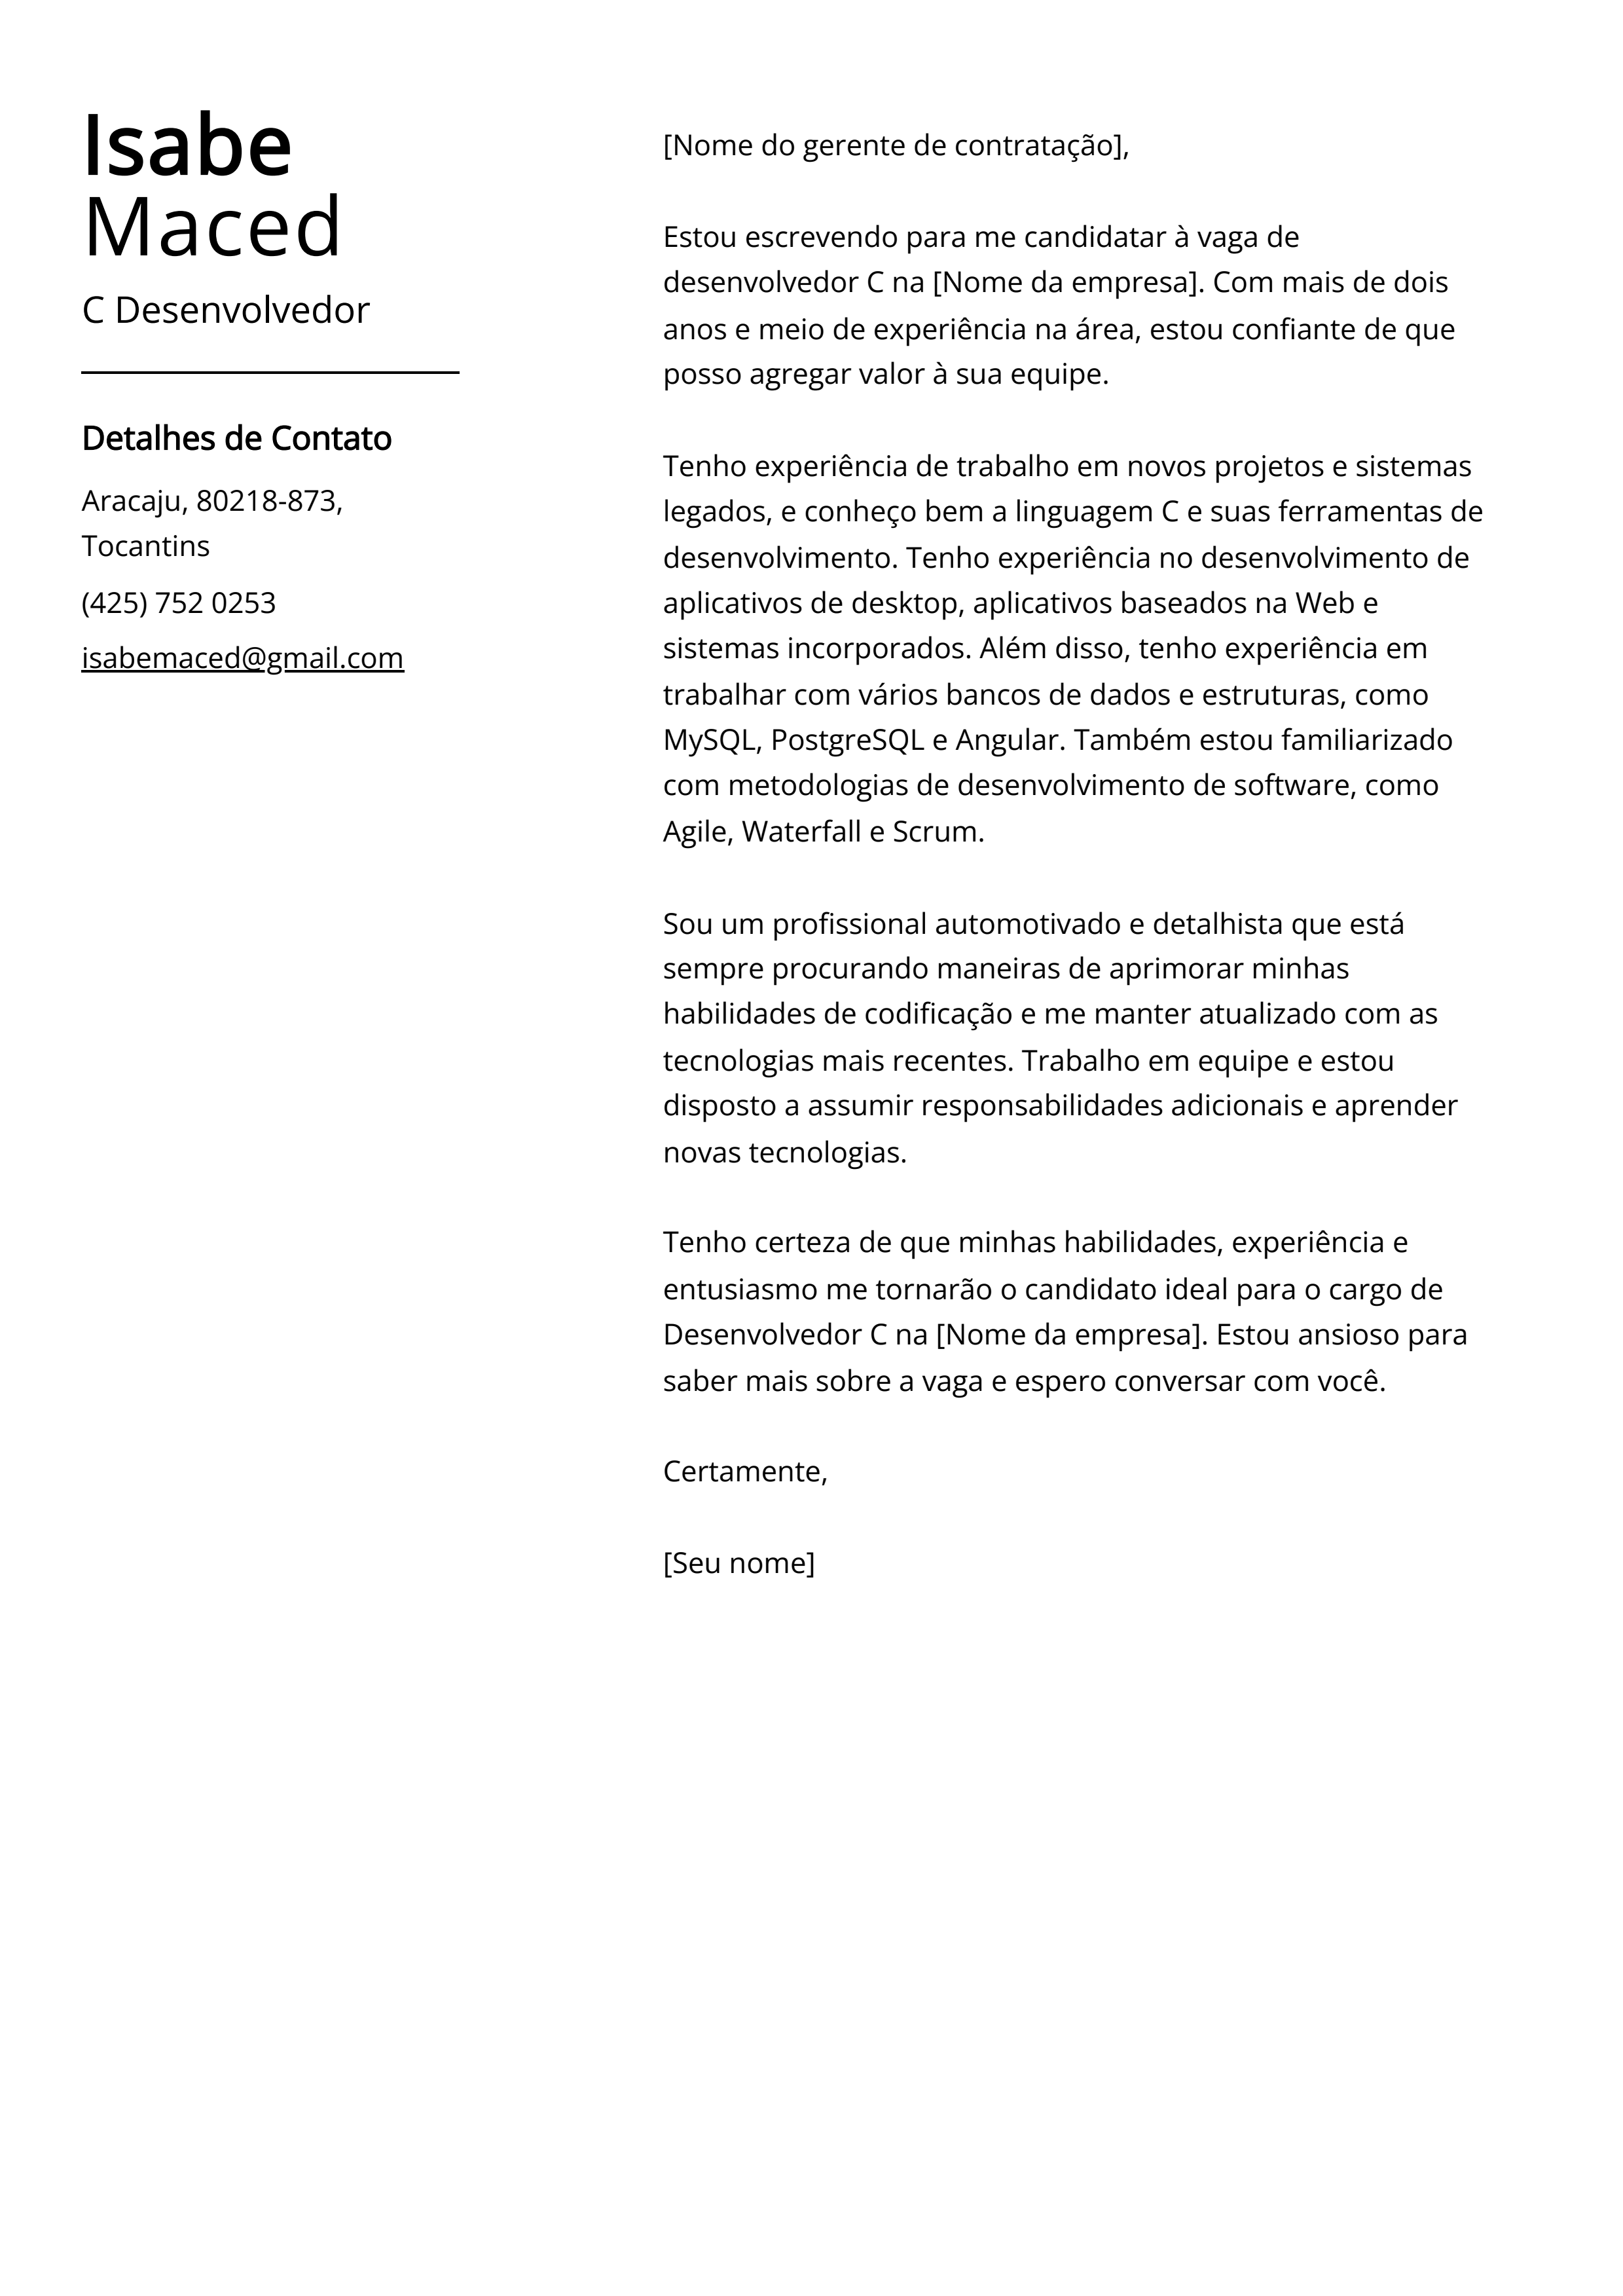 Exemplo de carta de apresentação do Desenvolvedor C